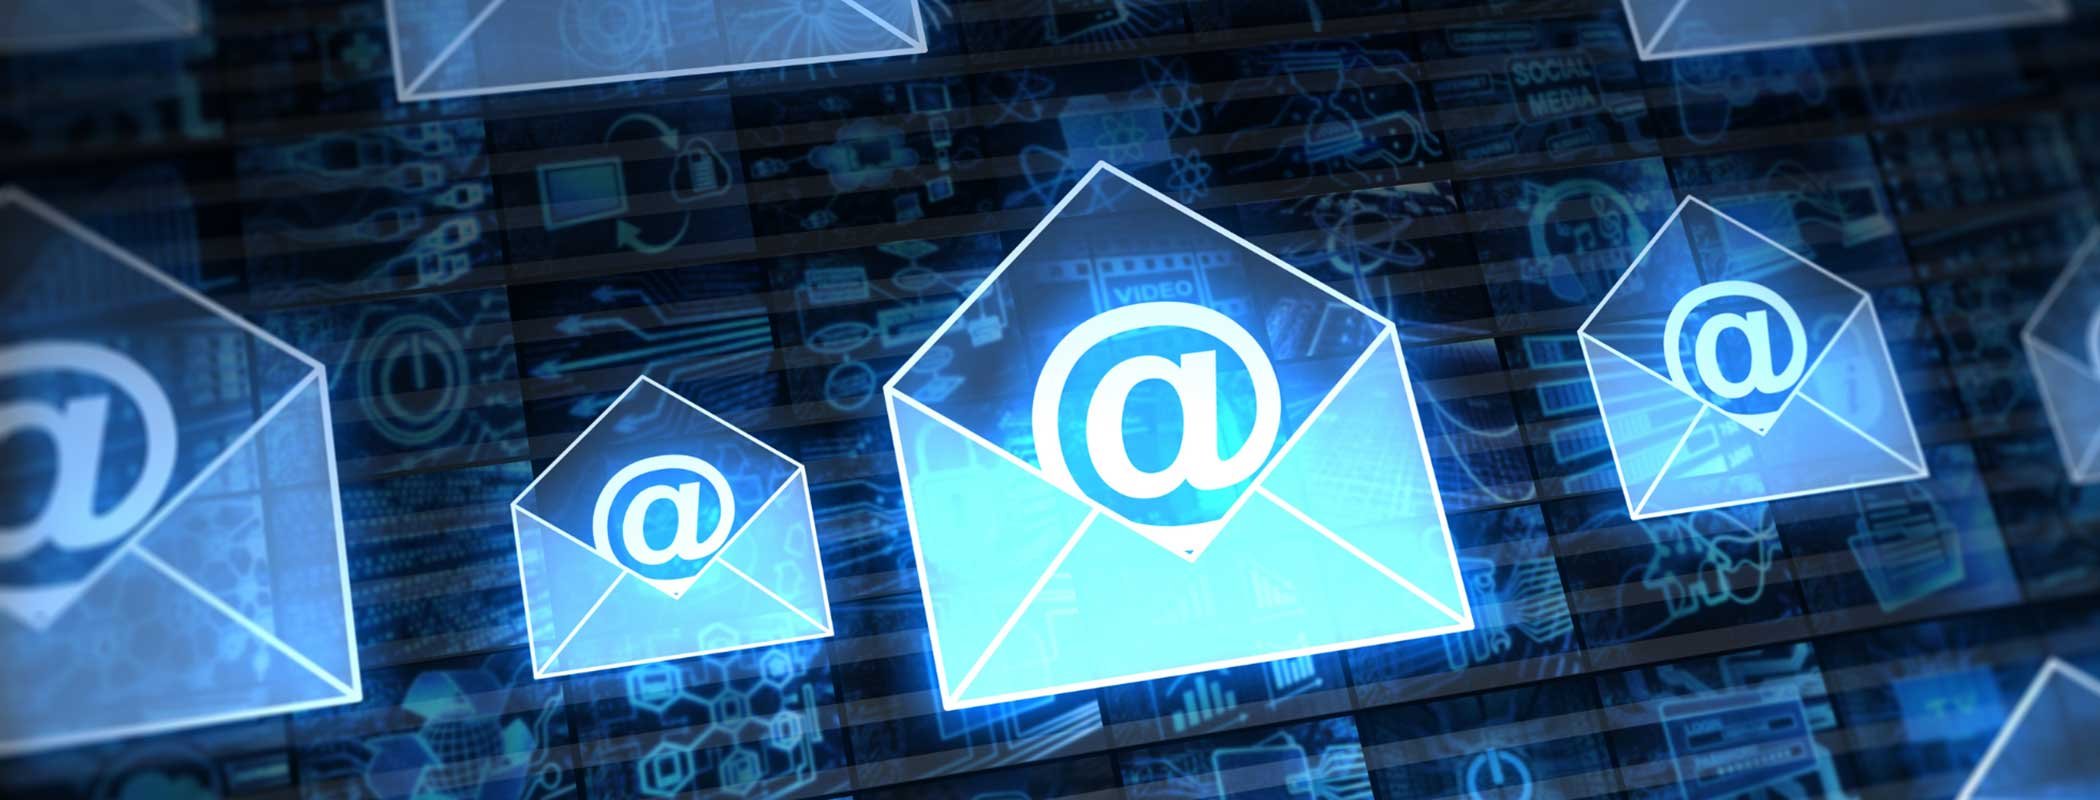 email envelopes